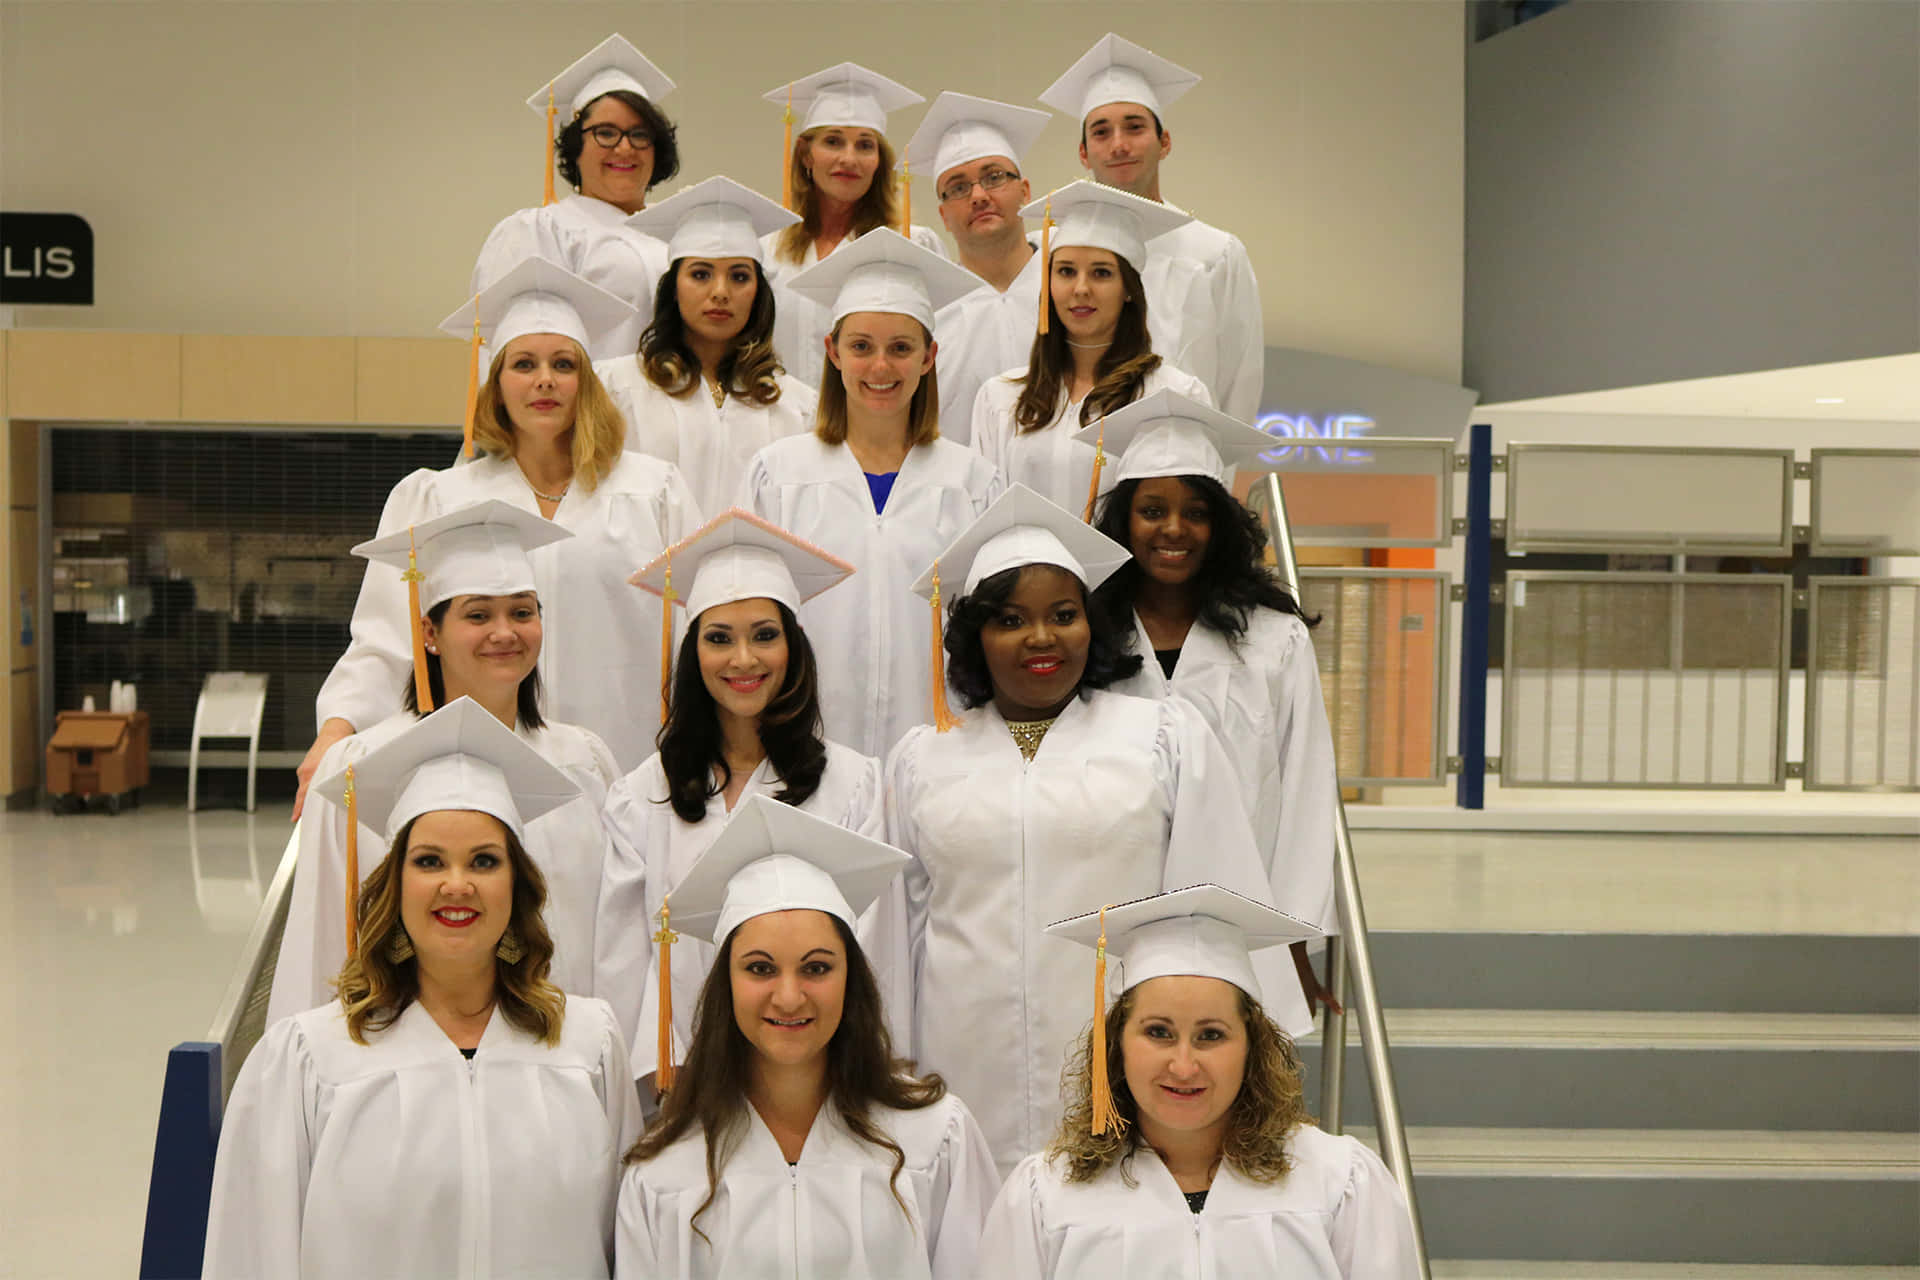 Einegruppe Von Frauen In Weißen Abschlusskleidern Posiert Für Ein Foto.